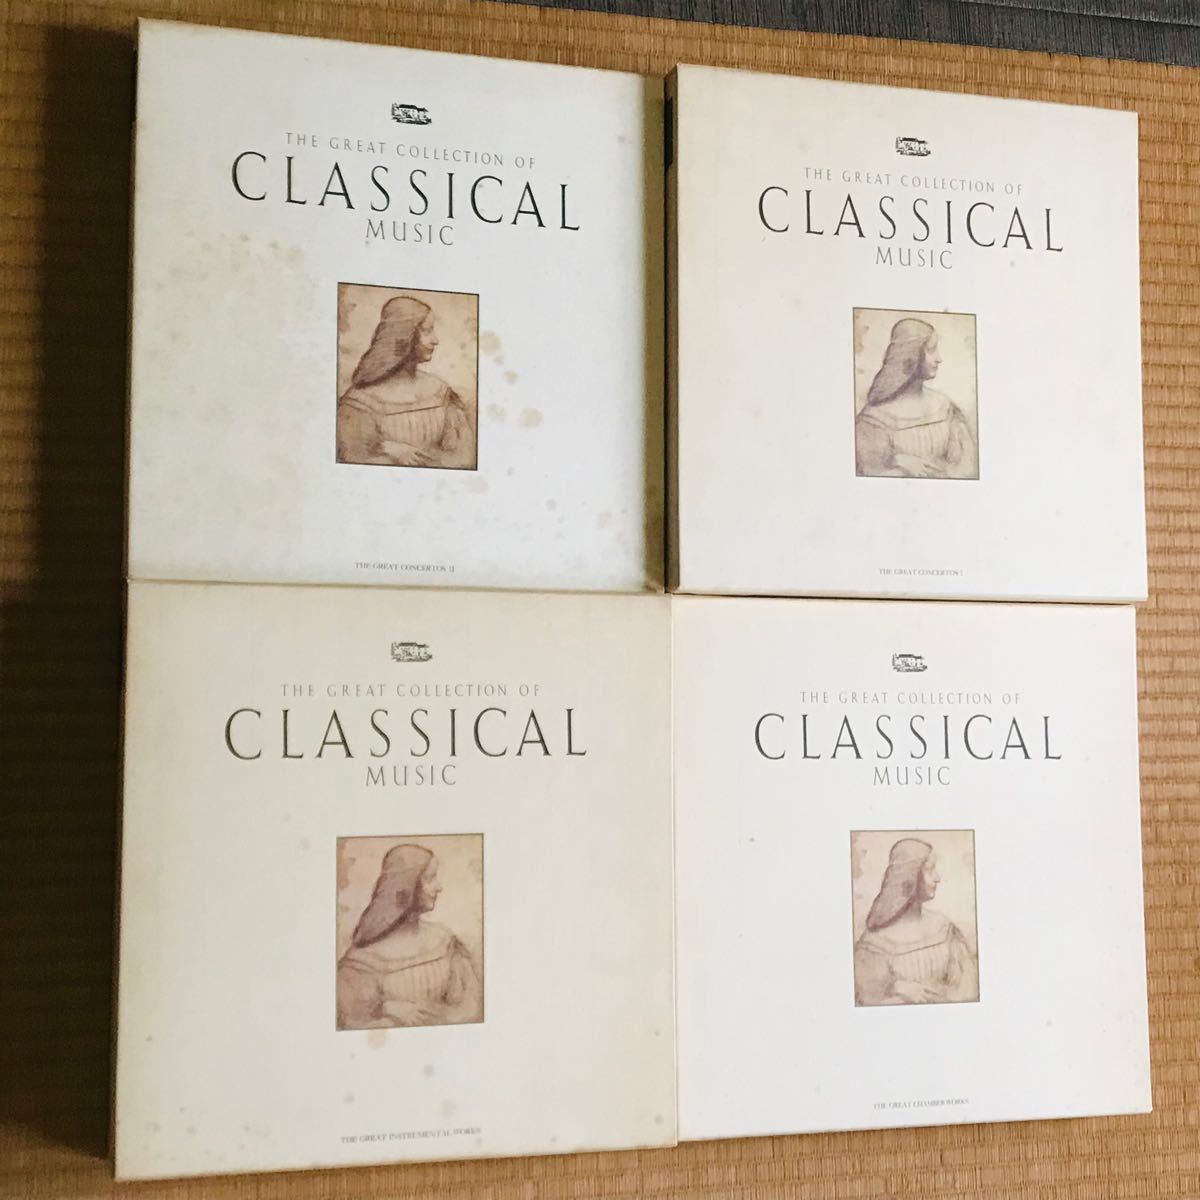 クラシック ザ・グレート コレクションズ 8箱セット 全 クラシック音楽